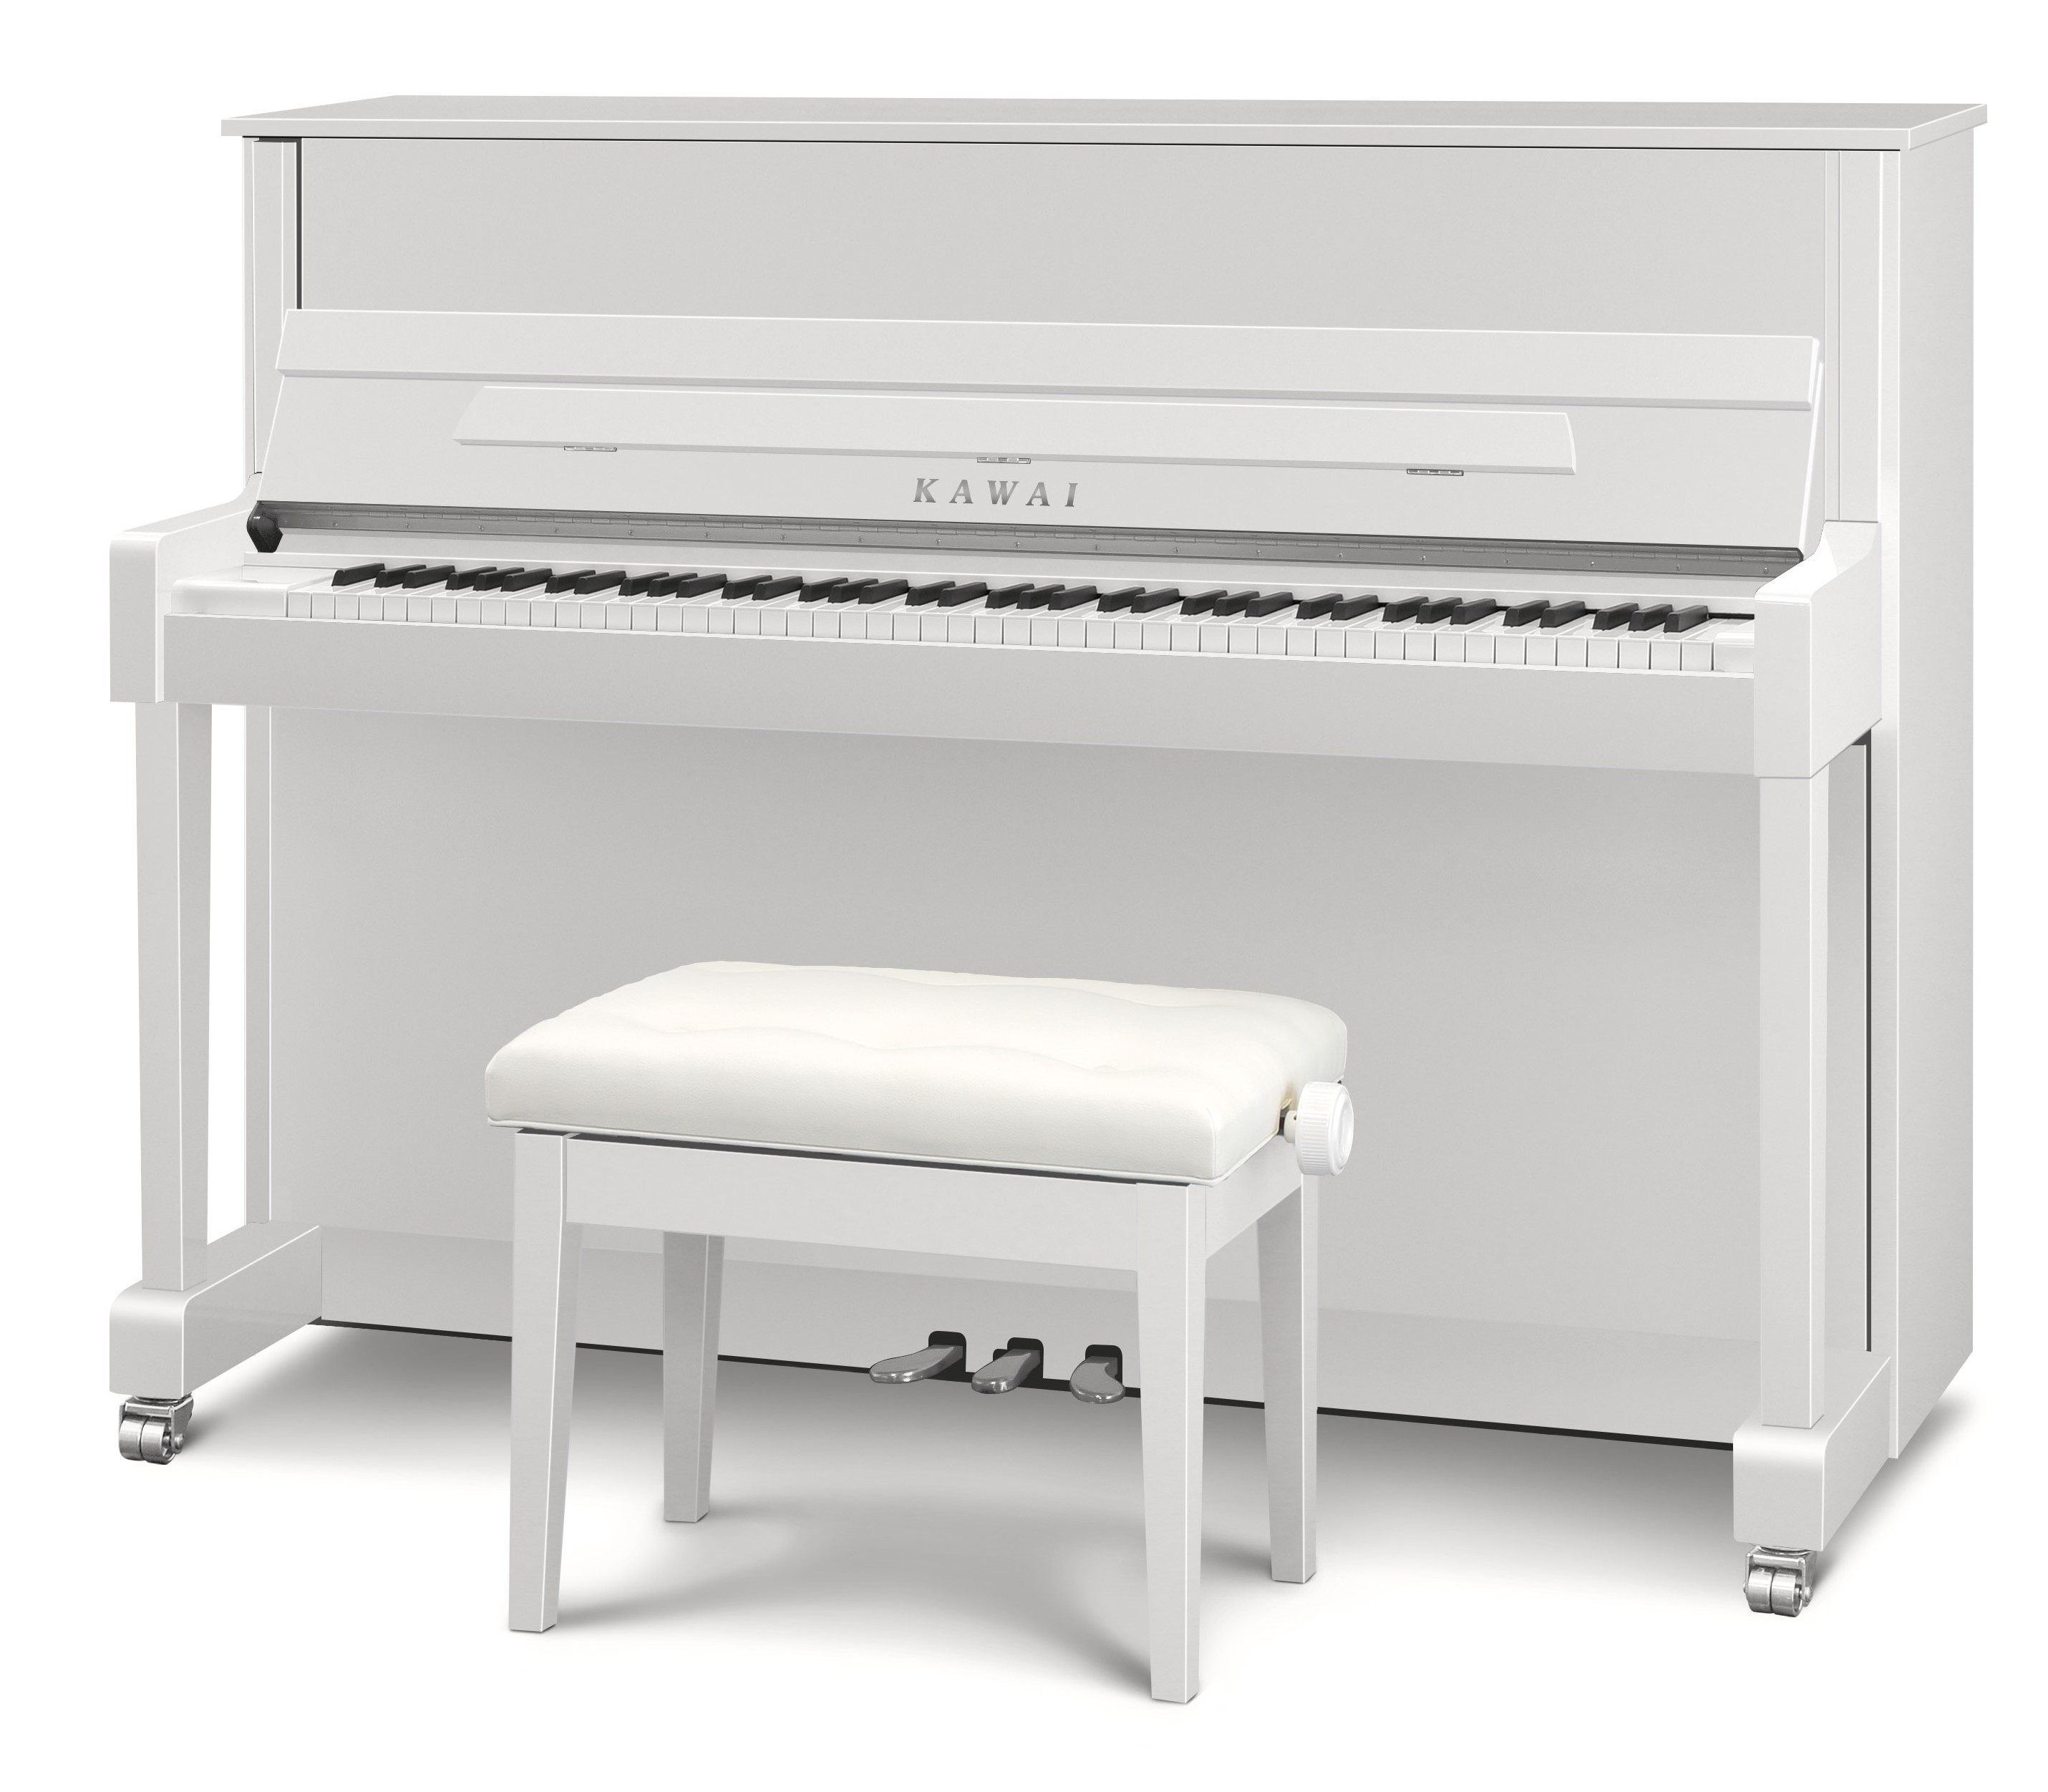 *カワイ×島村楽器のアップライトピアノ「K114SX」！]] 白艶塗装仕上げピアノ豊洲店で展示中。]]人気機種「K-114SN」をベースにした島村楽器限定モデルでございます。 カワイピアノの中では他にない「音色とタッチ」「シルバーパーツ」「白艶塗装外装仕上げ」「総ブラックフェルト」「ロイヤルジョージ […]